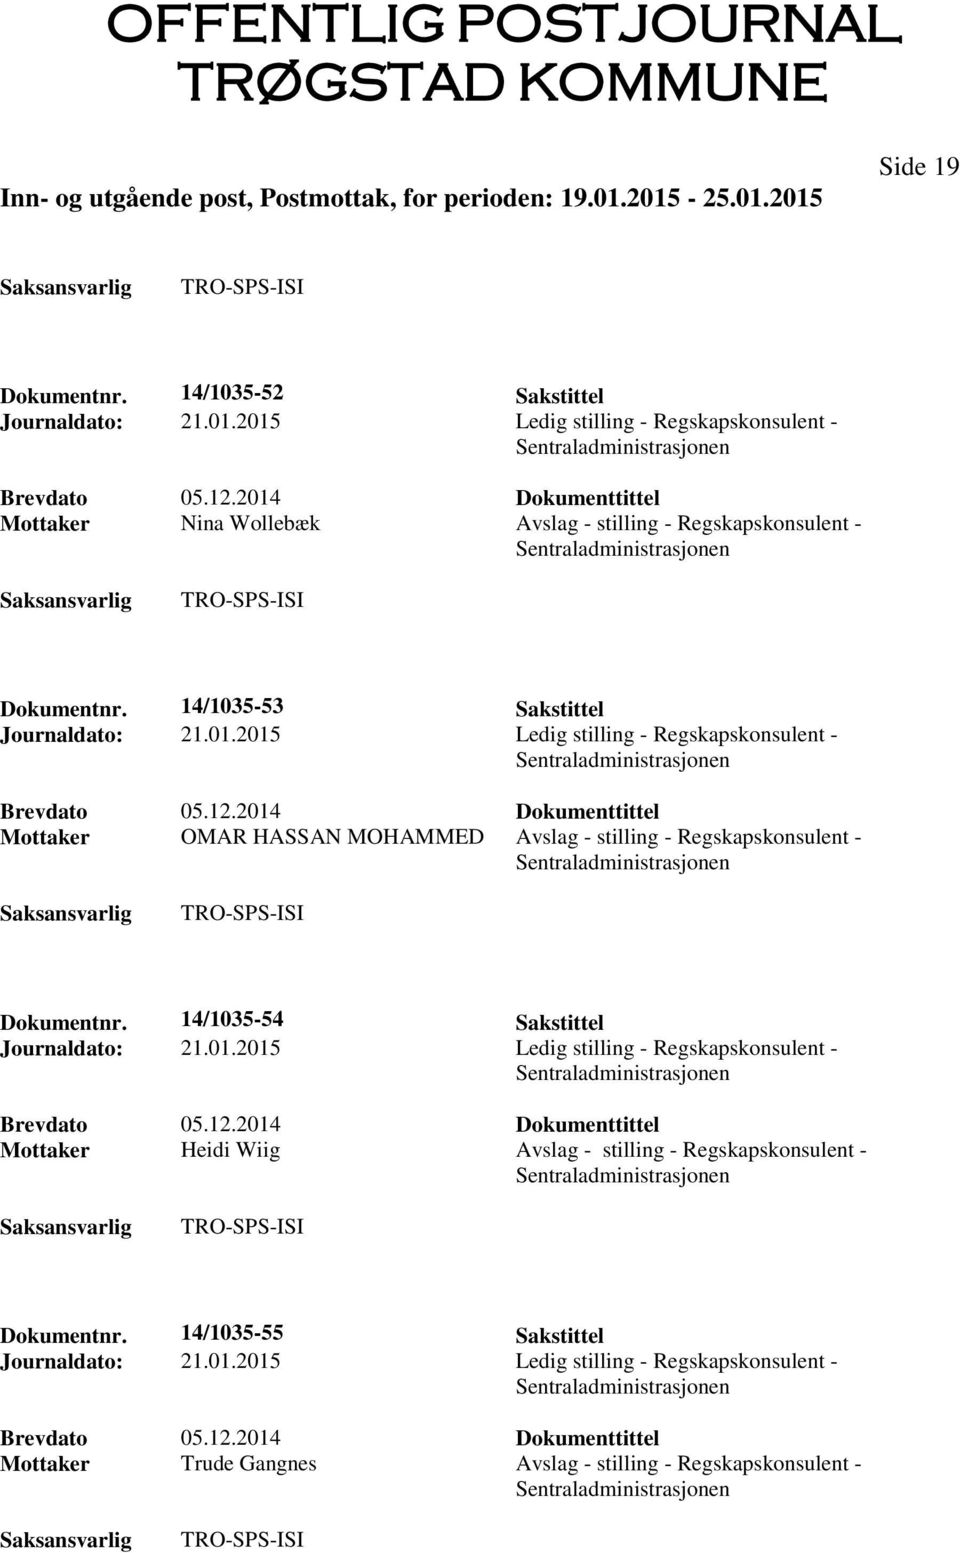 14/1035-54 Sakstittel Journaldato: 21.01.2015 Ledig stilling - Regskapskonsulent - Mottaker Heidi Wiig Avslag - stilling - Regskapskonsulent - Dokumentnr.